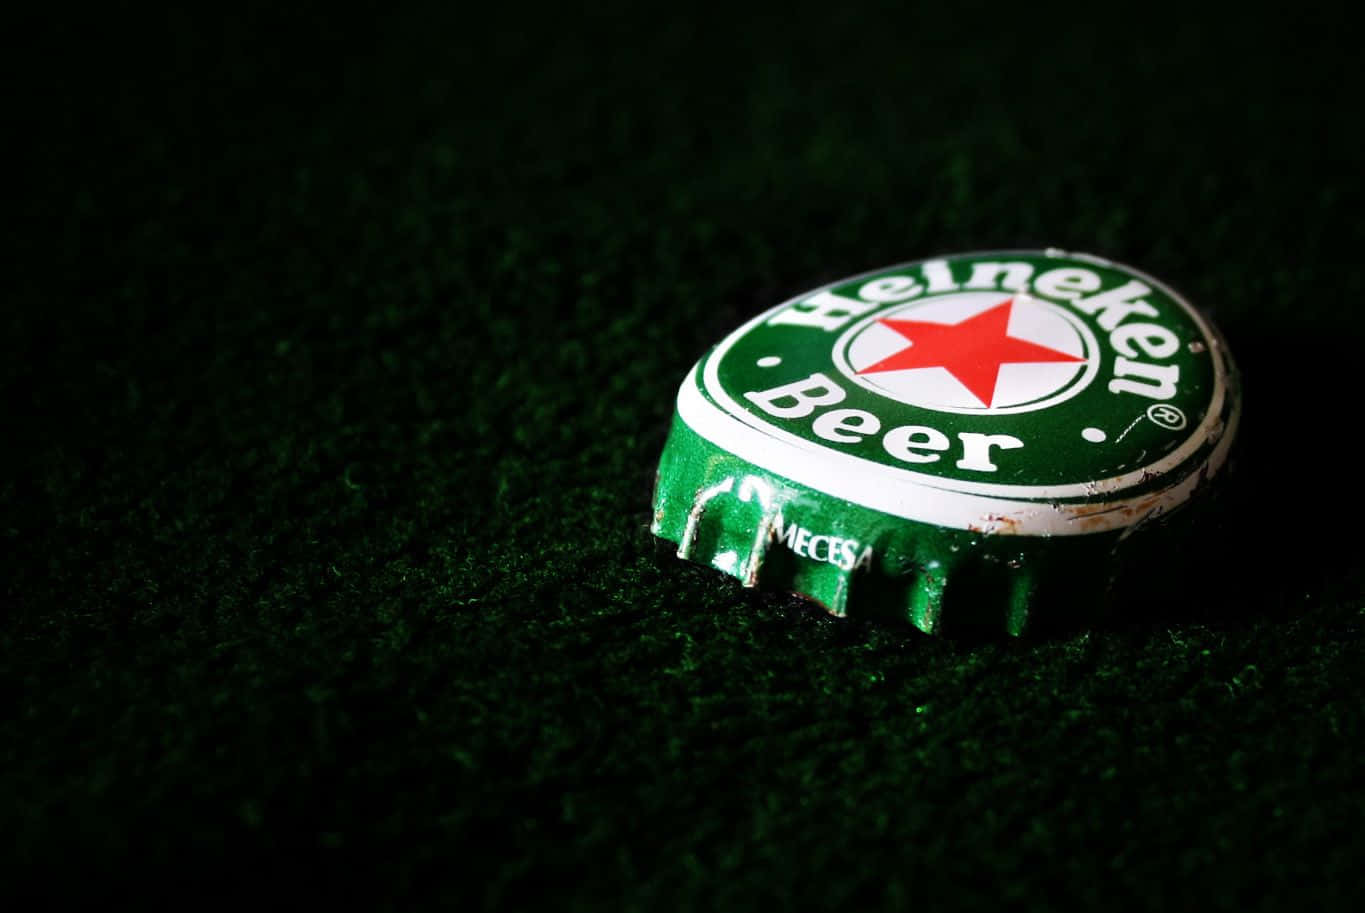 Heineken1365 X 913 Baggrund.